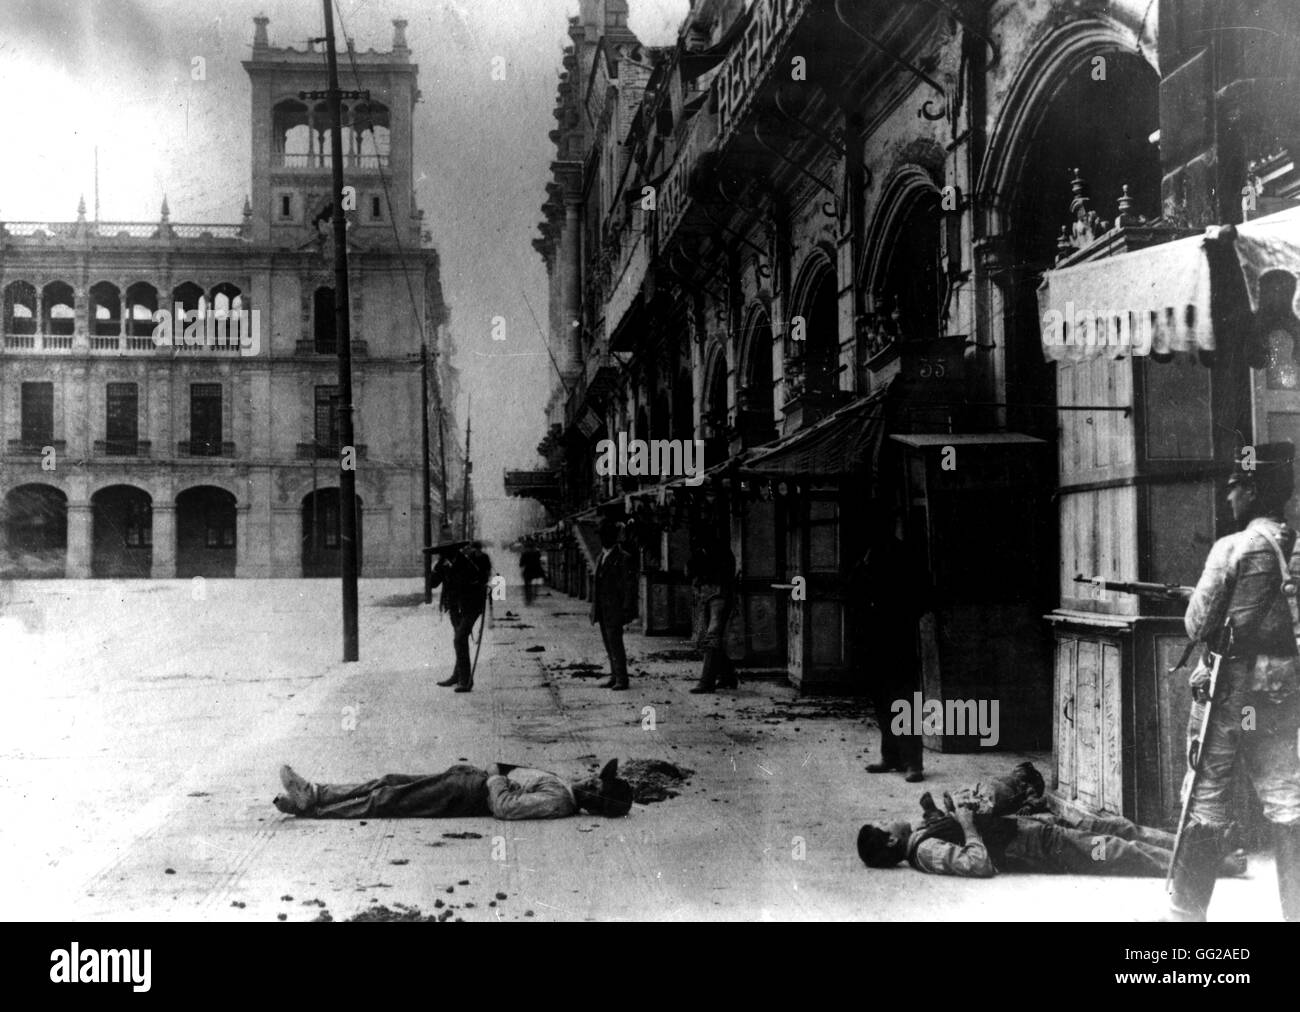 Révolution mexicaine. Cadavre dans la rue au Mexique. 20 mai 1914 Mexique Washington, D.C. Library of Congress Banque D'Images